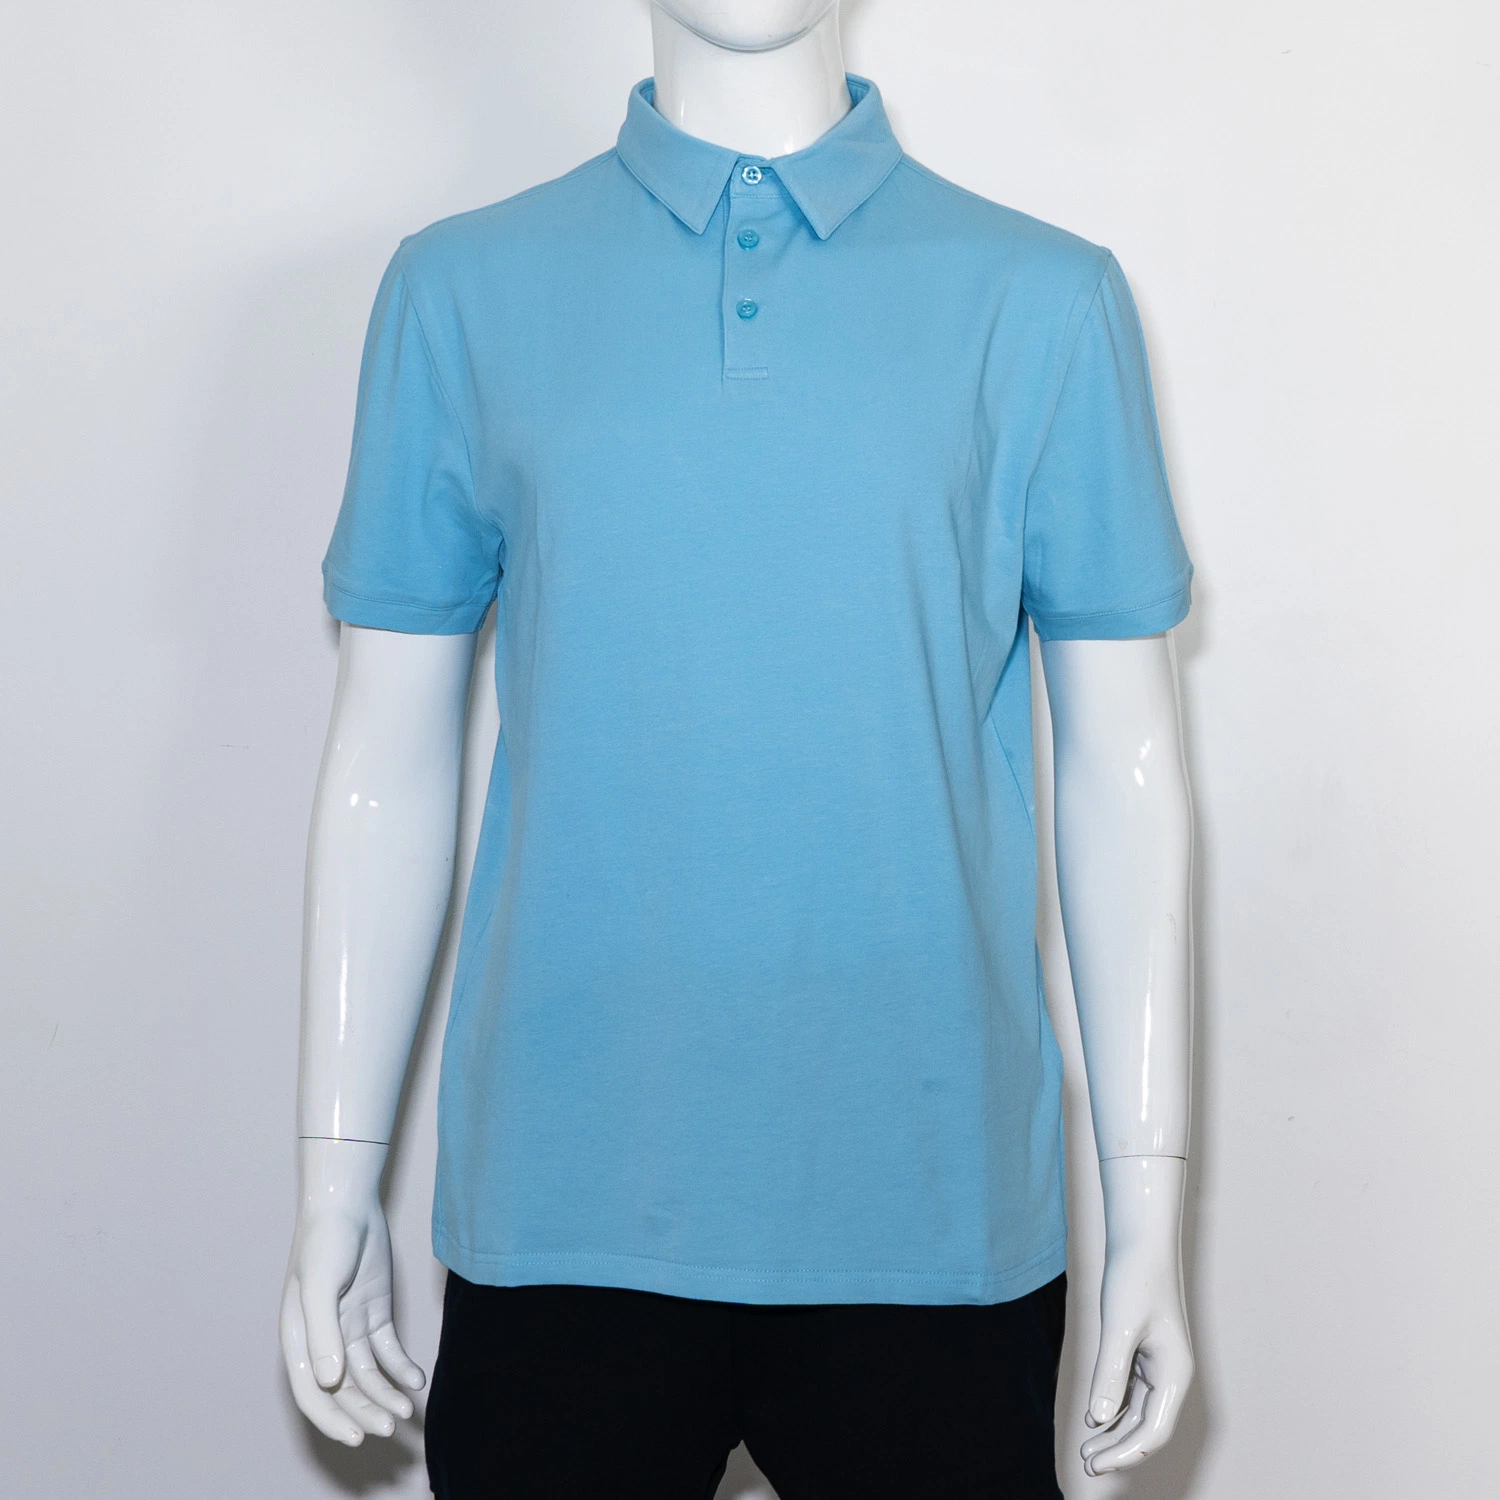 Rosa Basic T-Shirt Custom Stickerei Print Kurzarm Top Großhandel/Lieferant Shirt Hochwertige Bekleidung Herren Casual Cotton Polo